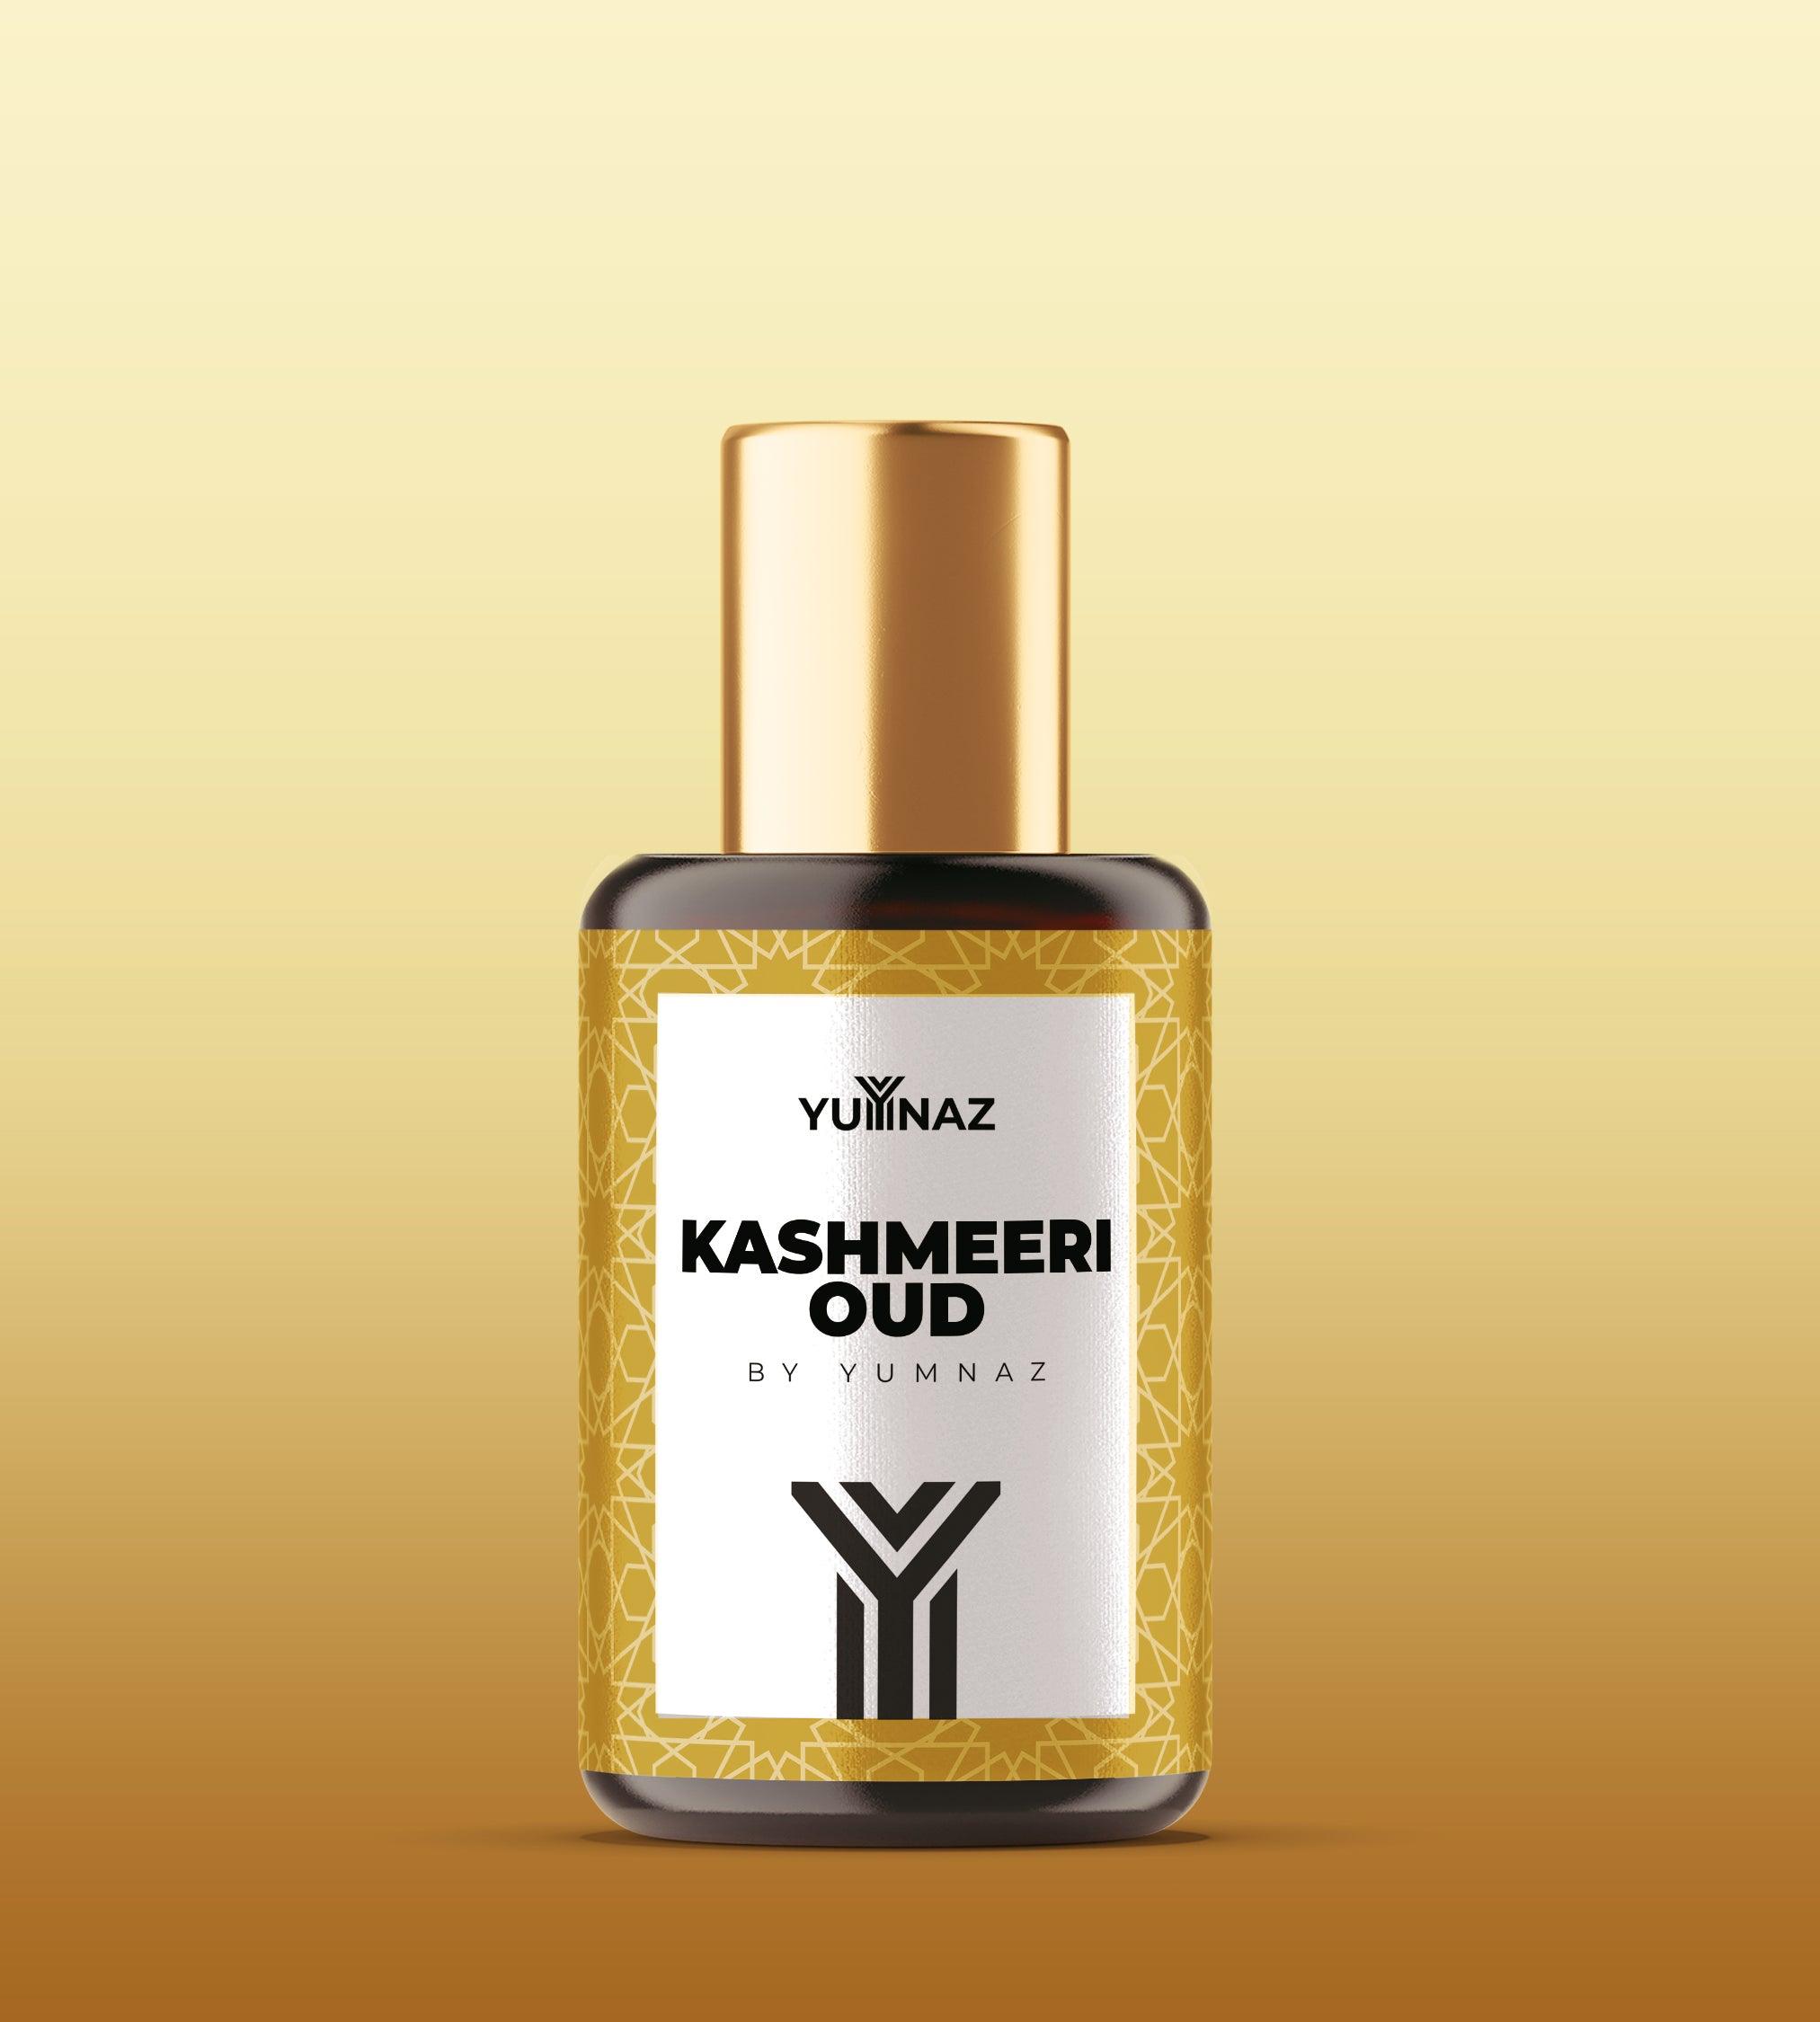 Kashmeeri Oud Perfume on a Discounted Price in Pakistan - yumnaz